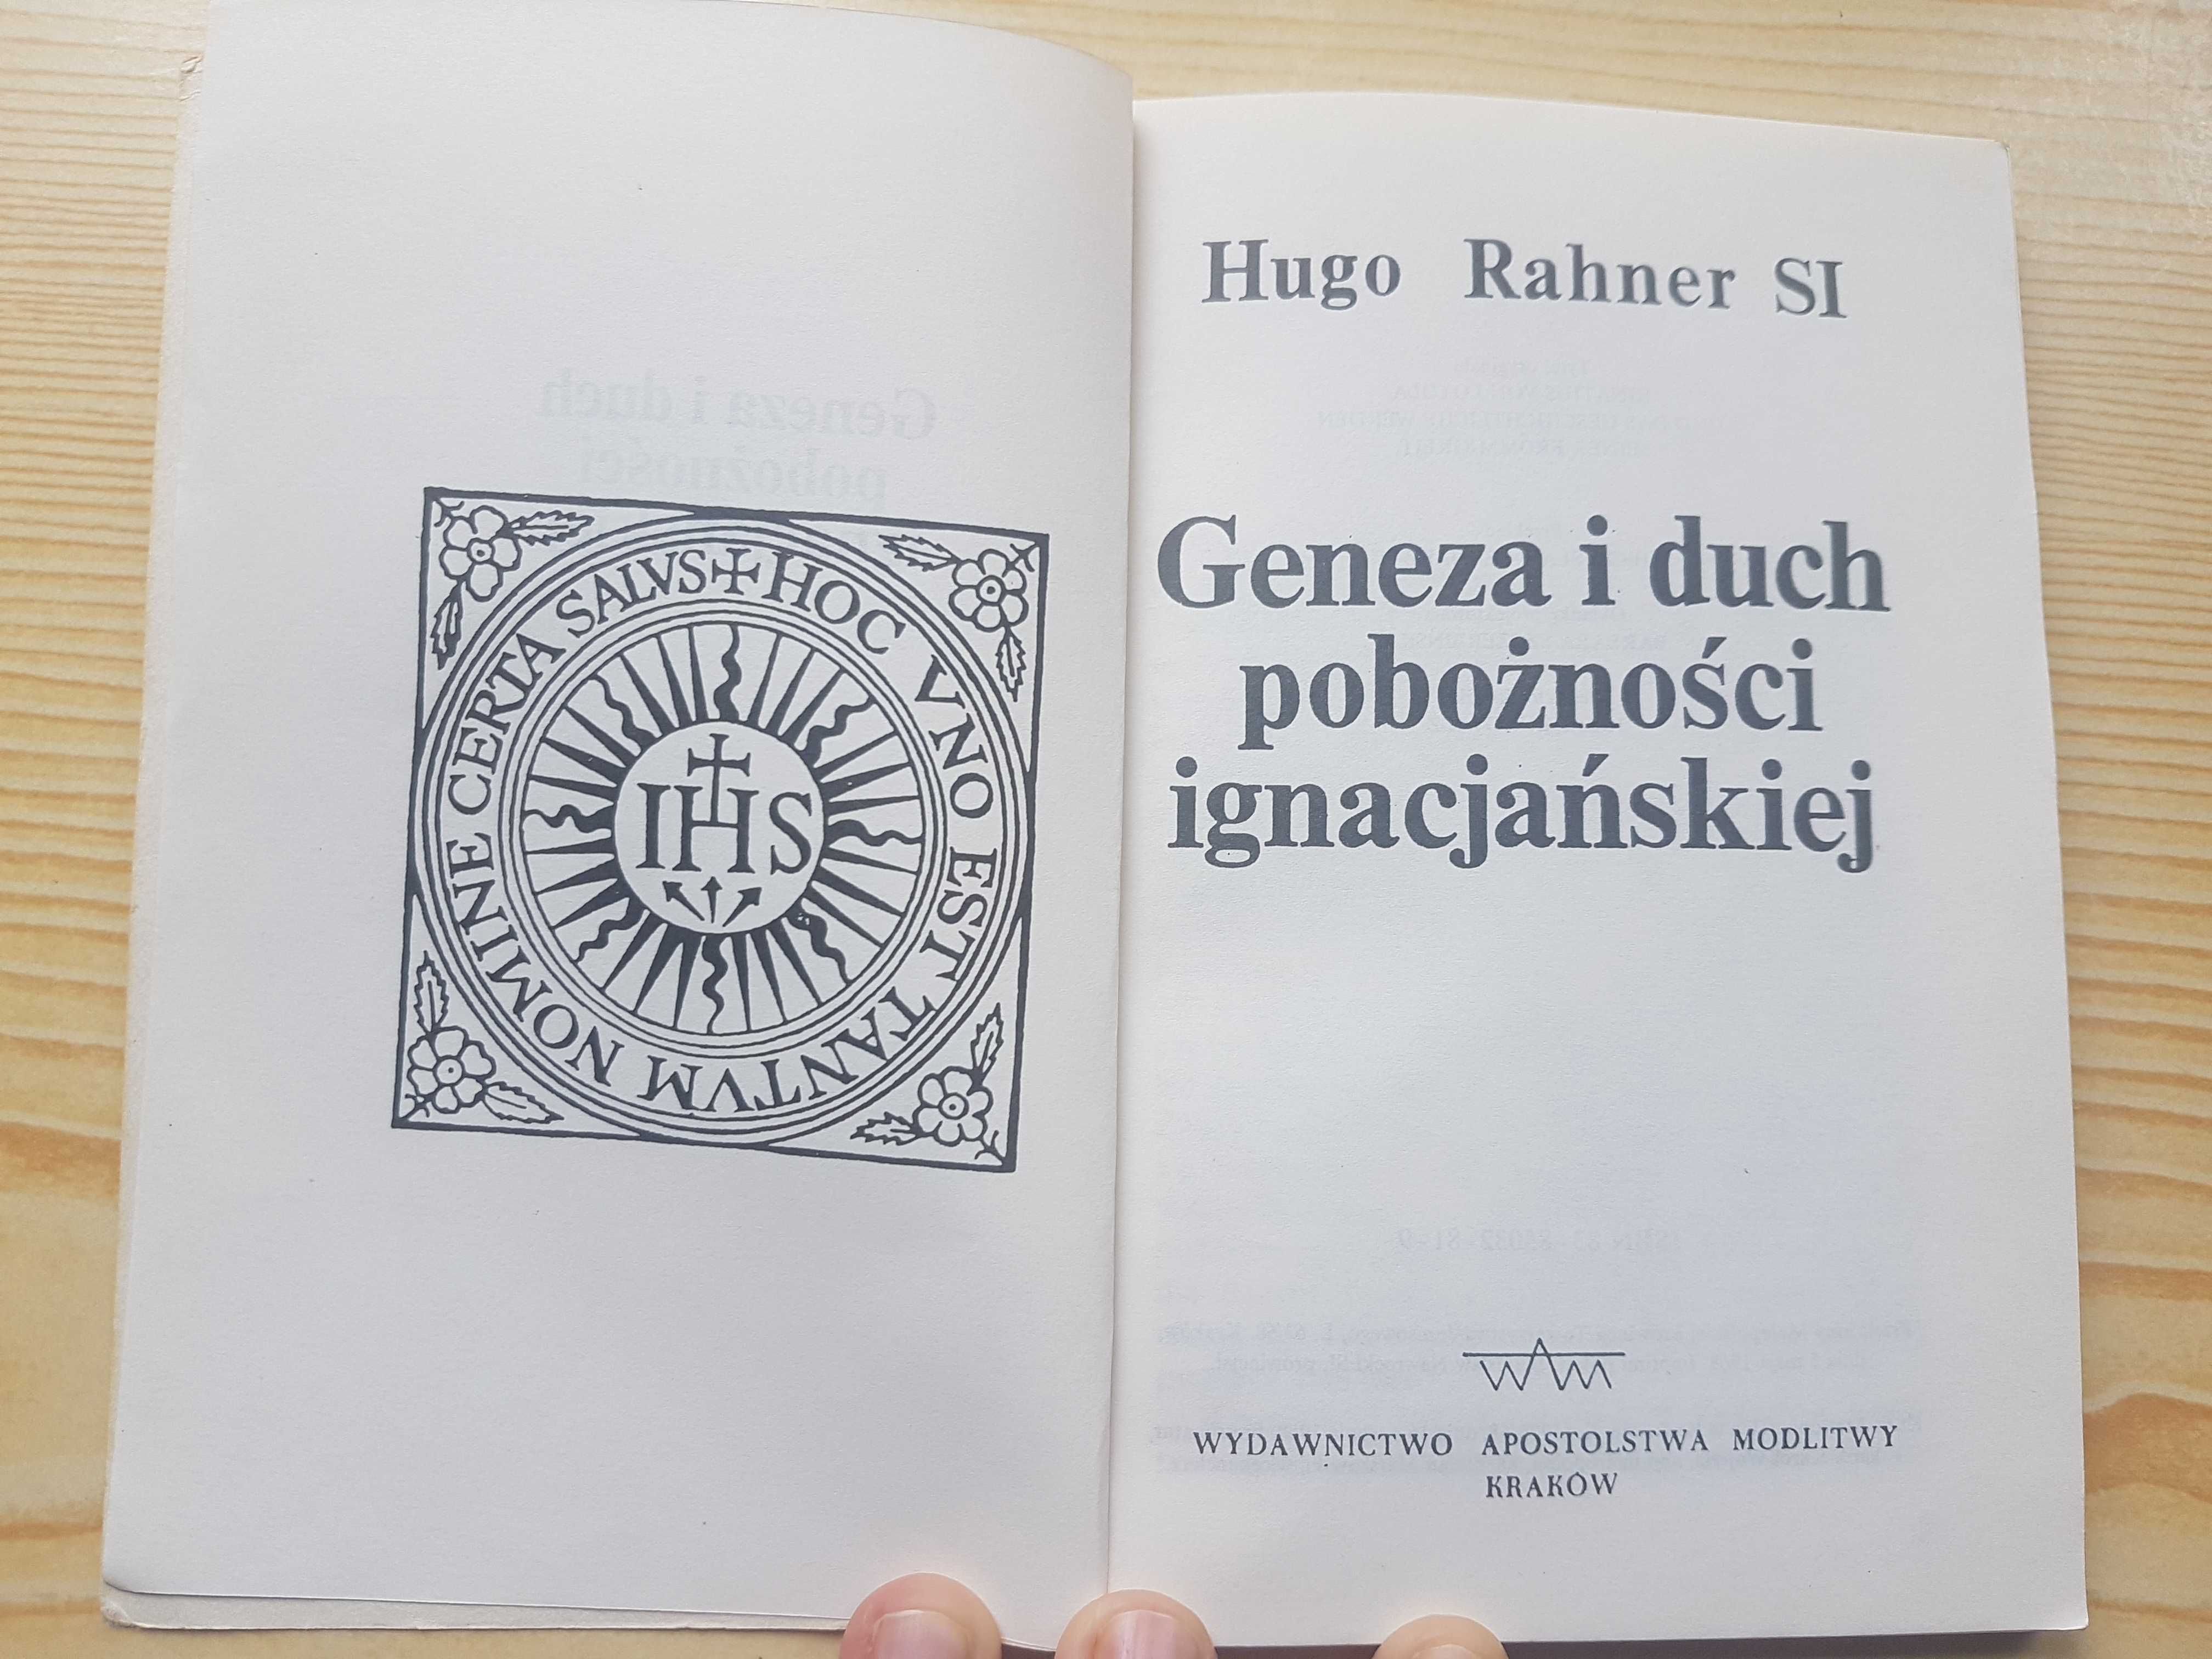 Hugo Rahner SI "Geneza i duch pobożności ignacjańskiej"